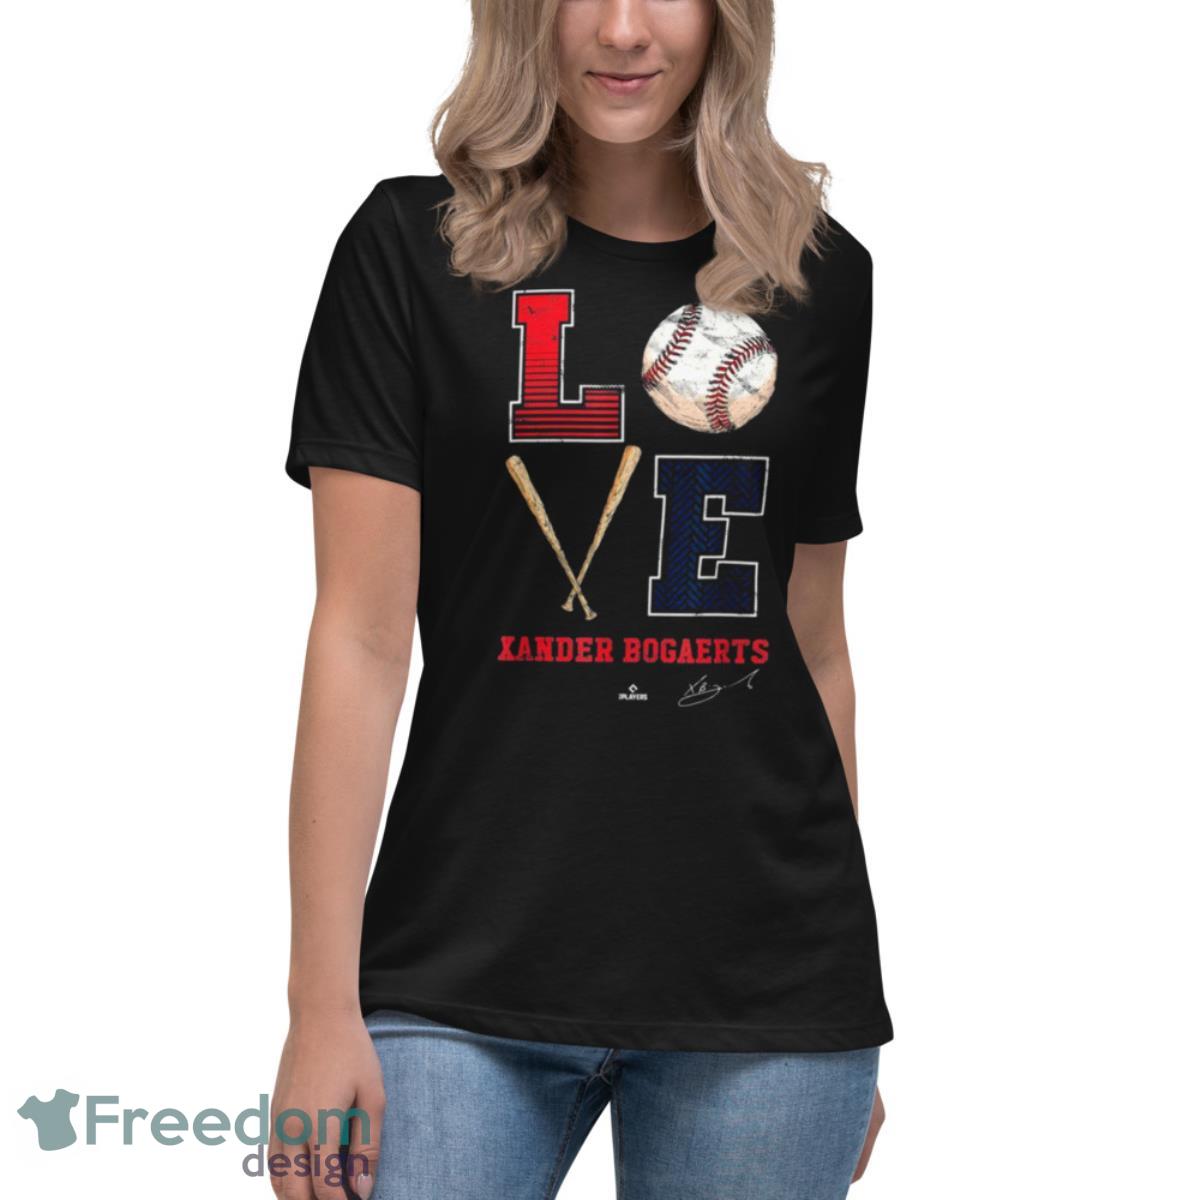 Love Xander Bogaerts Xan Diego Xander Bogaerts Shirt - Freedomdesign